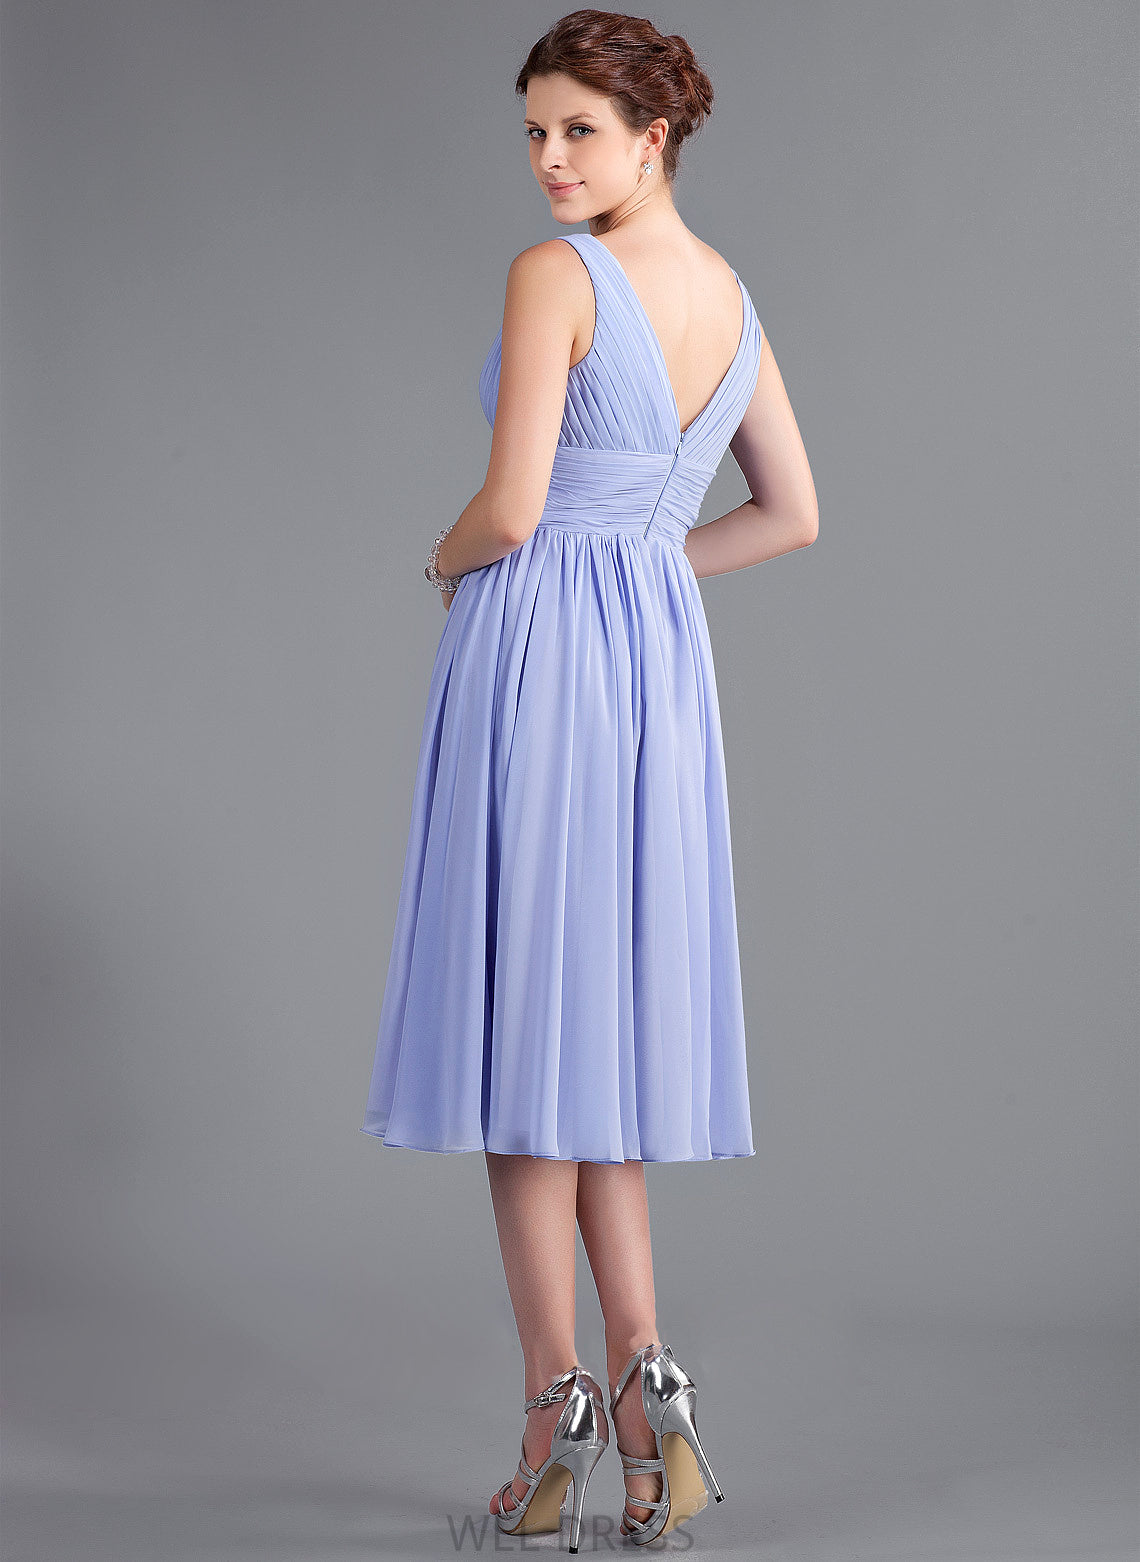 Ruffle A-Line Silhouette Length Neckline V-neck Tea-Length Embellishment Fabric Marisa V-Neck Natural Waist